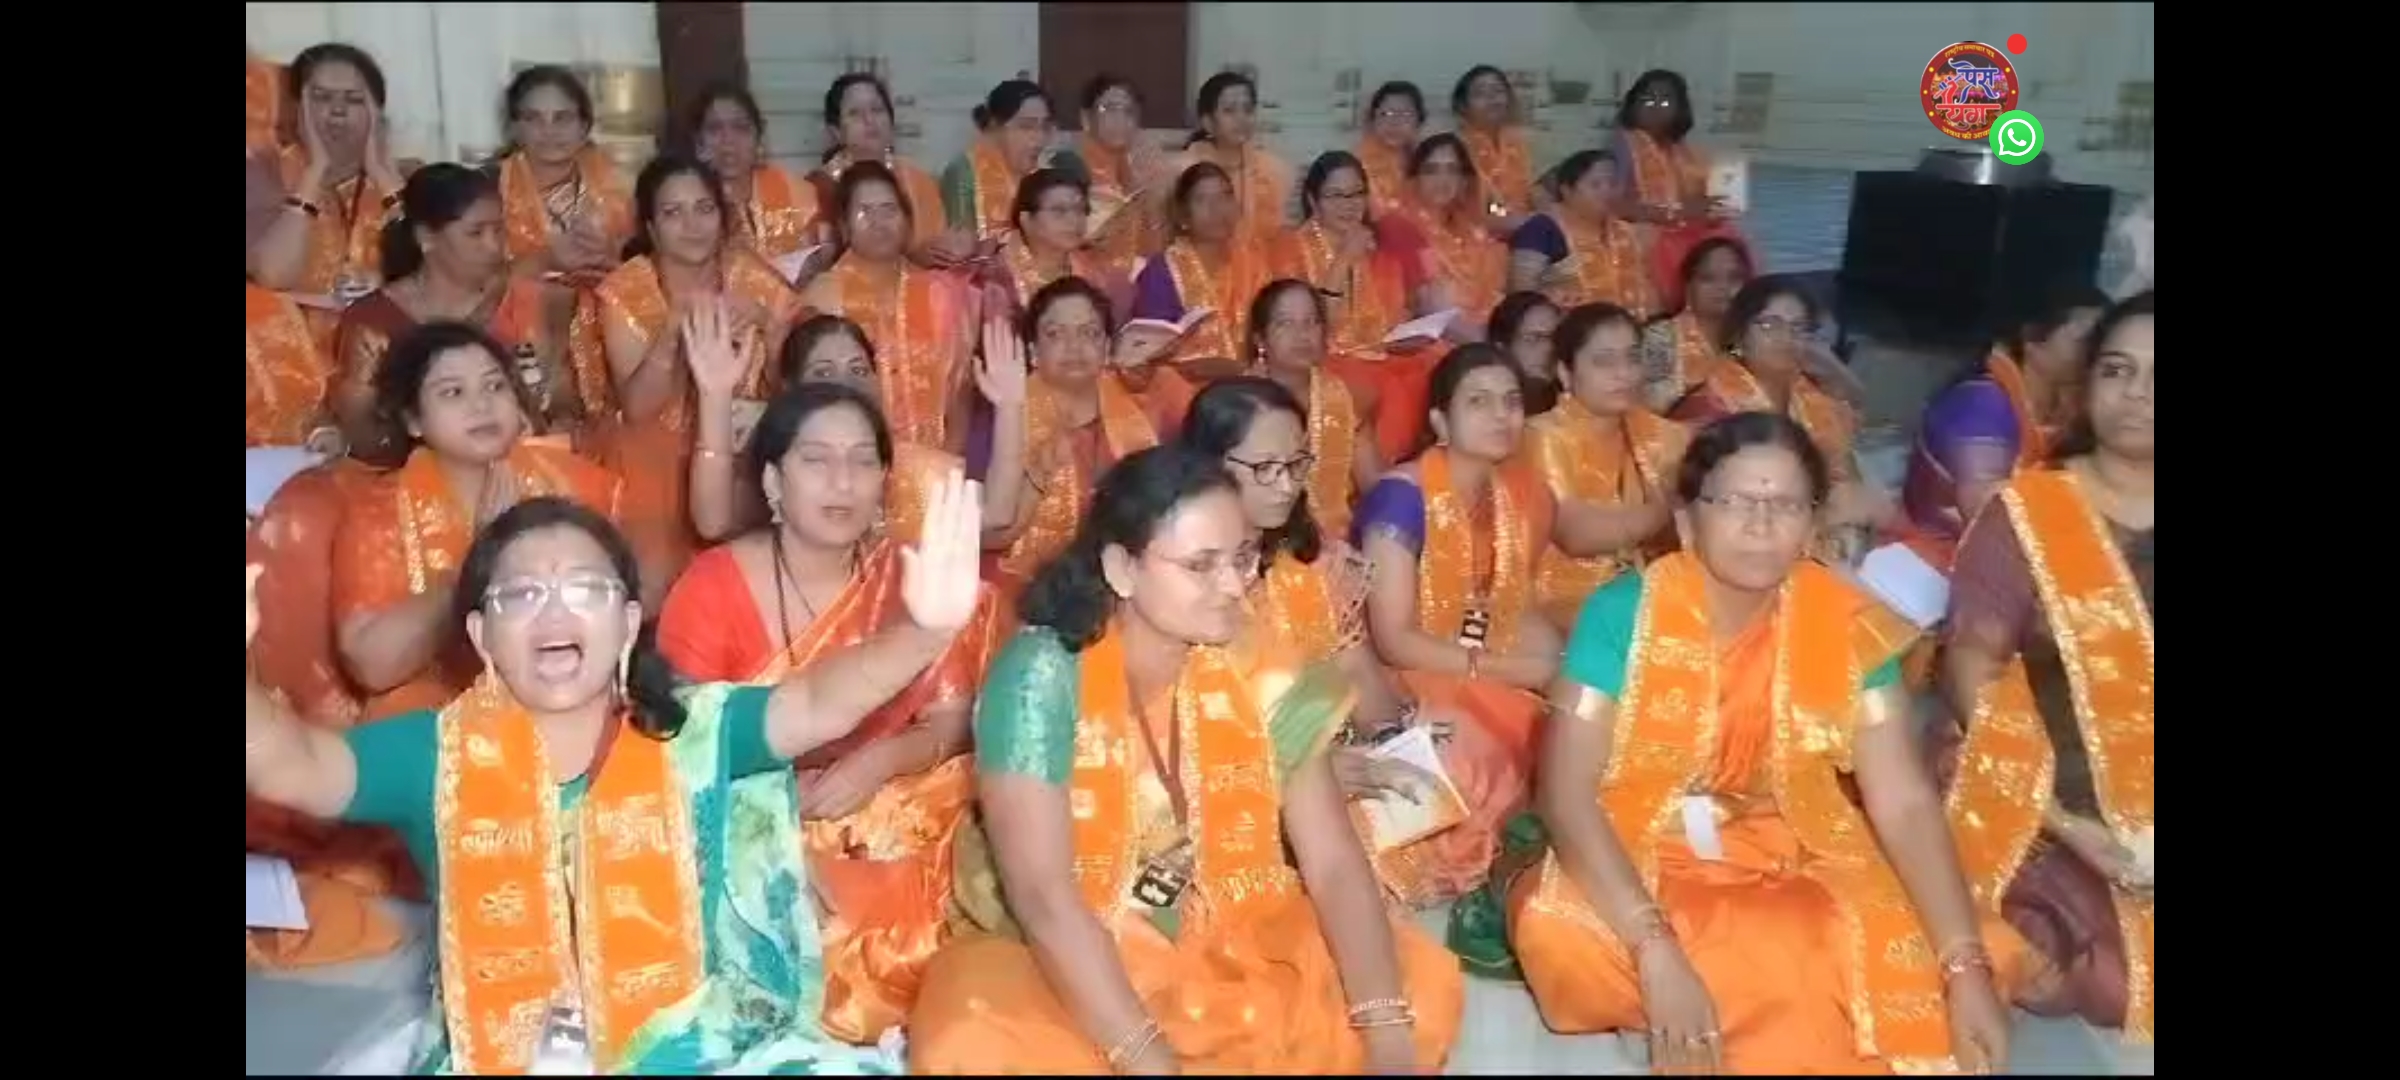 अयोध्या में रामलला को देखने महाराष्ट्र से आई 150 महिलाओं का डेलिगेशन